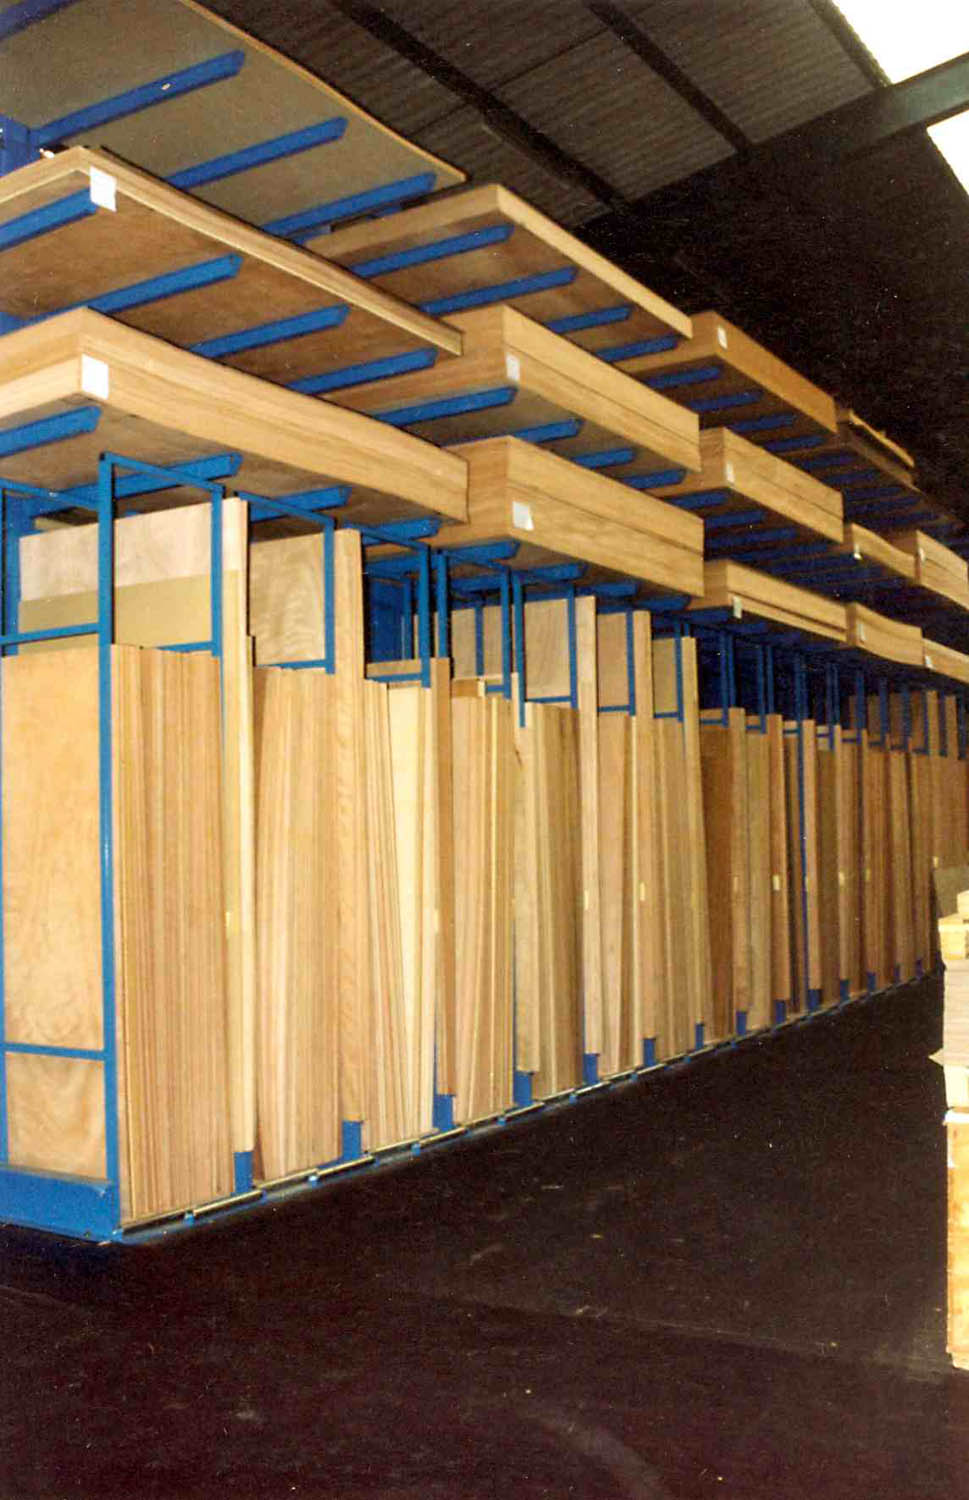 Vertikale Lagerung von Holz 